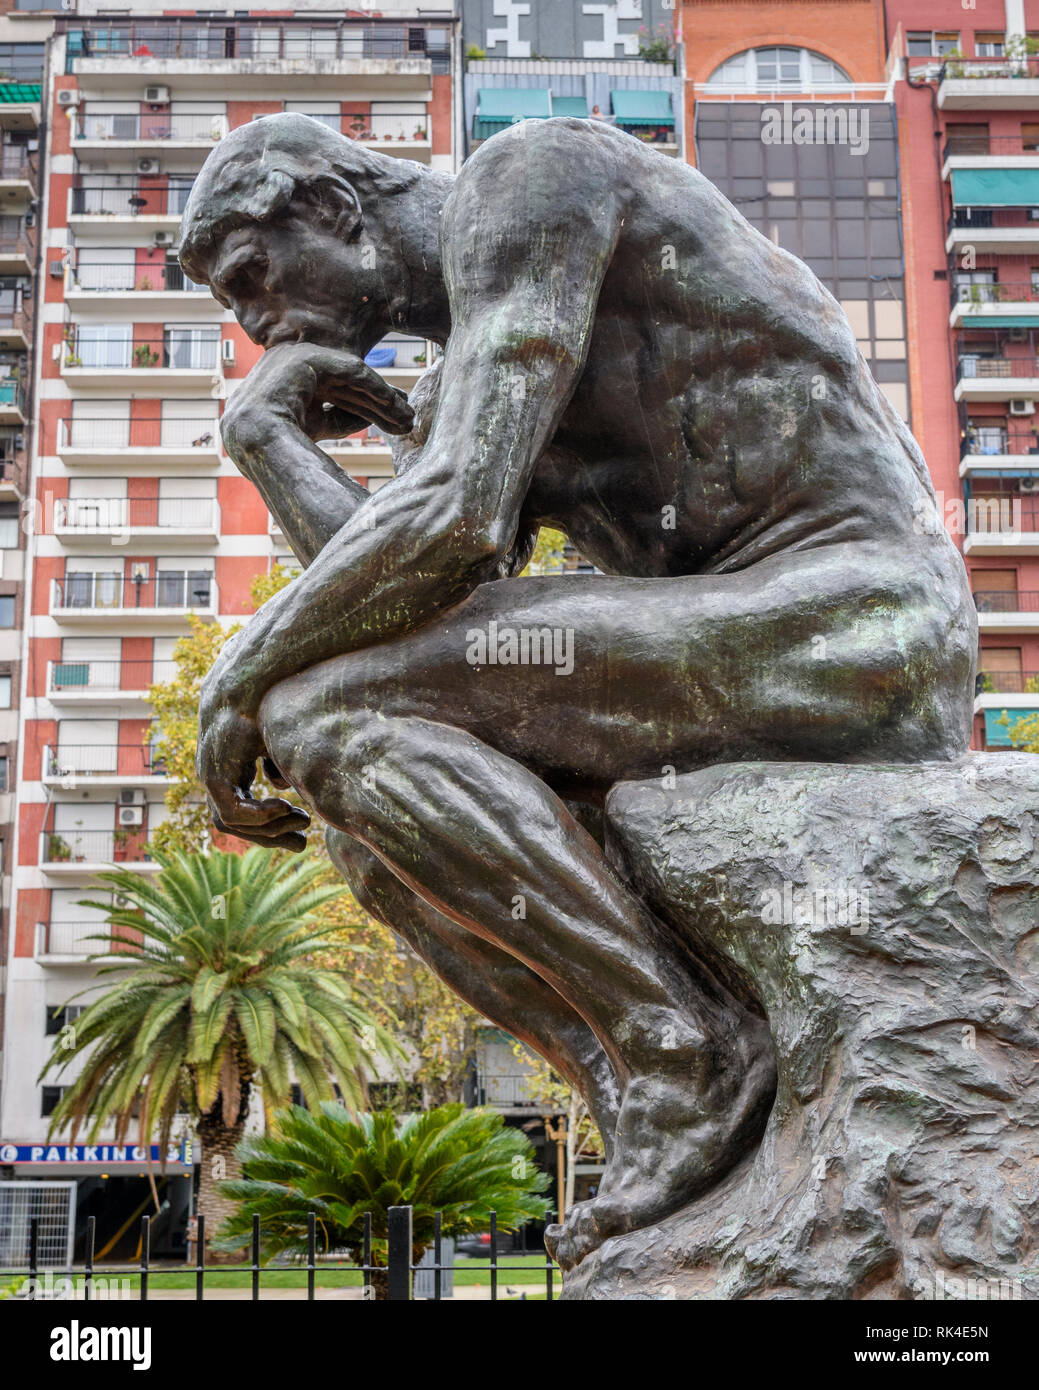 Réplique de la sculpture de Rodin "Le Penseur" dans le centre historique de la ville de Buenos Aires, Argentine. Banque D'Images